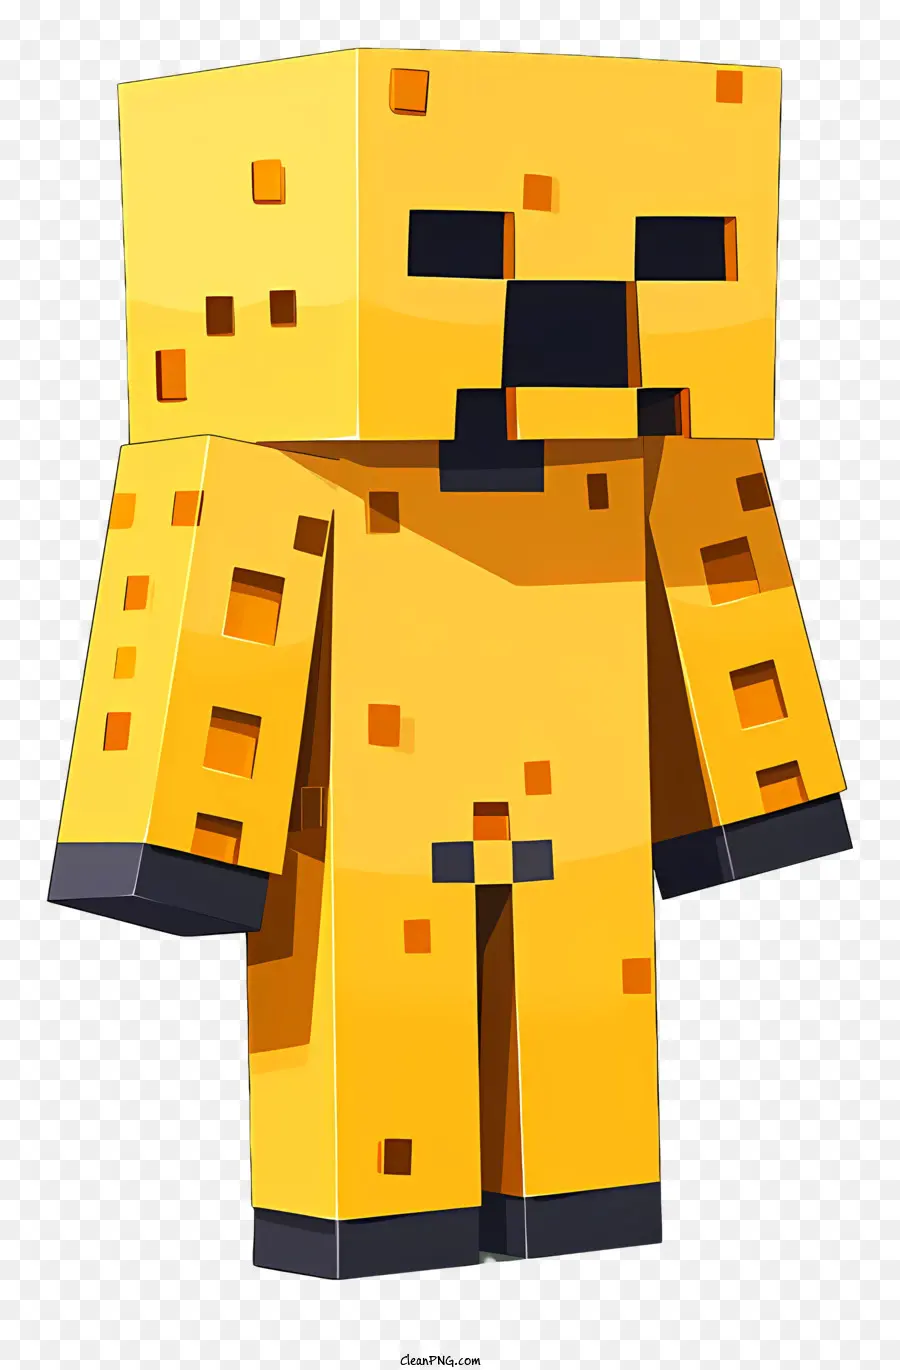 Minecraft - Immagine ravvicinata del personaggio iconico Minecraft Creeper